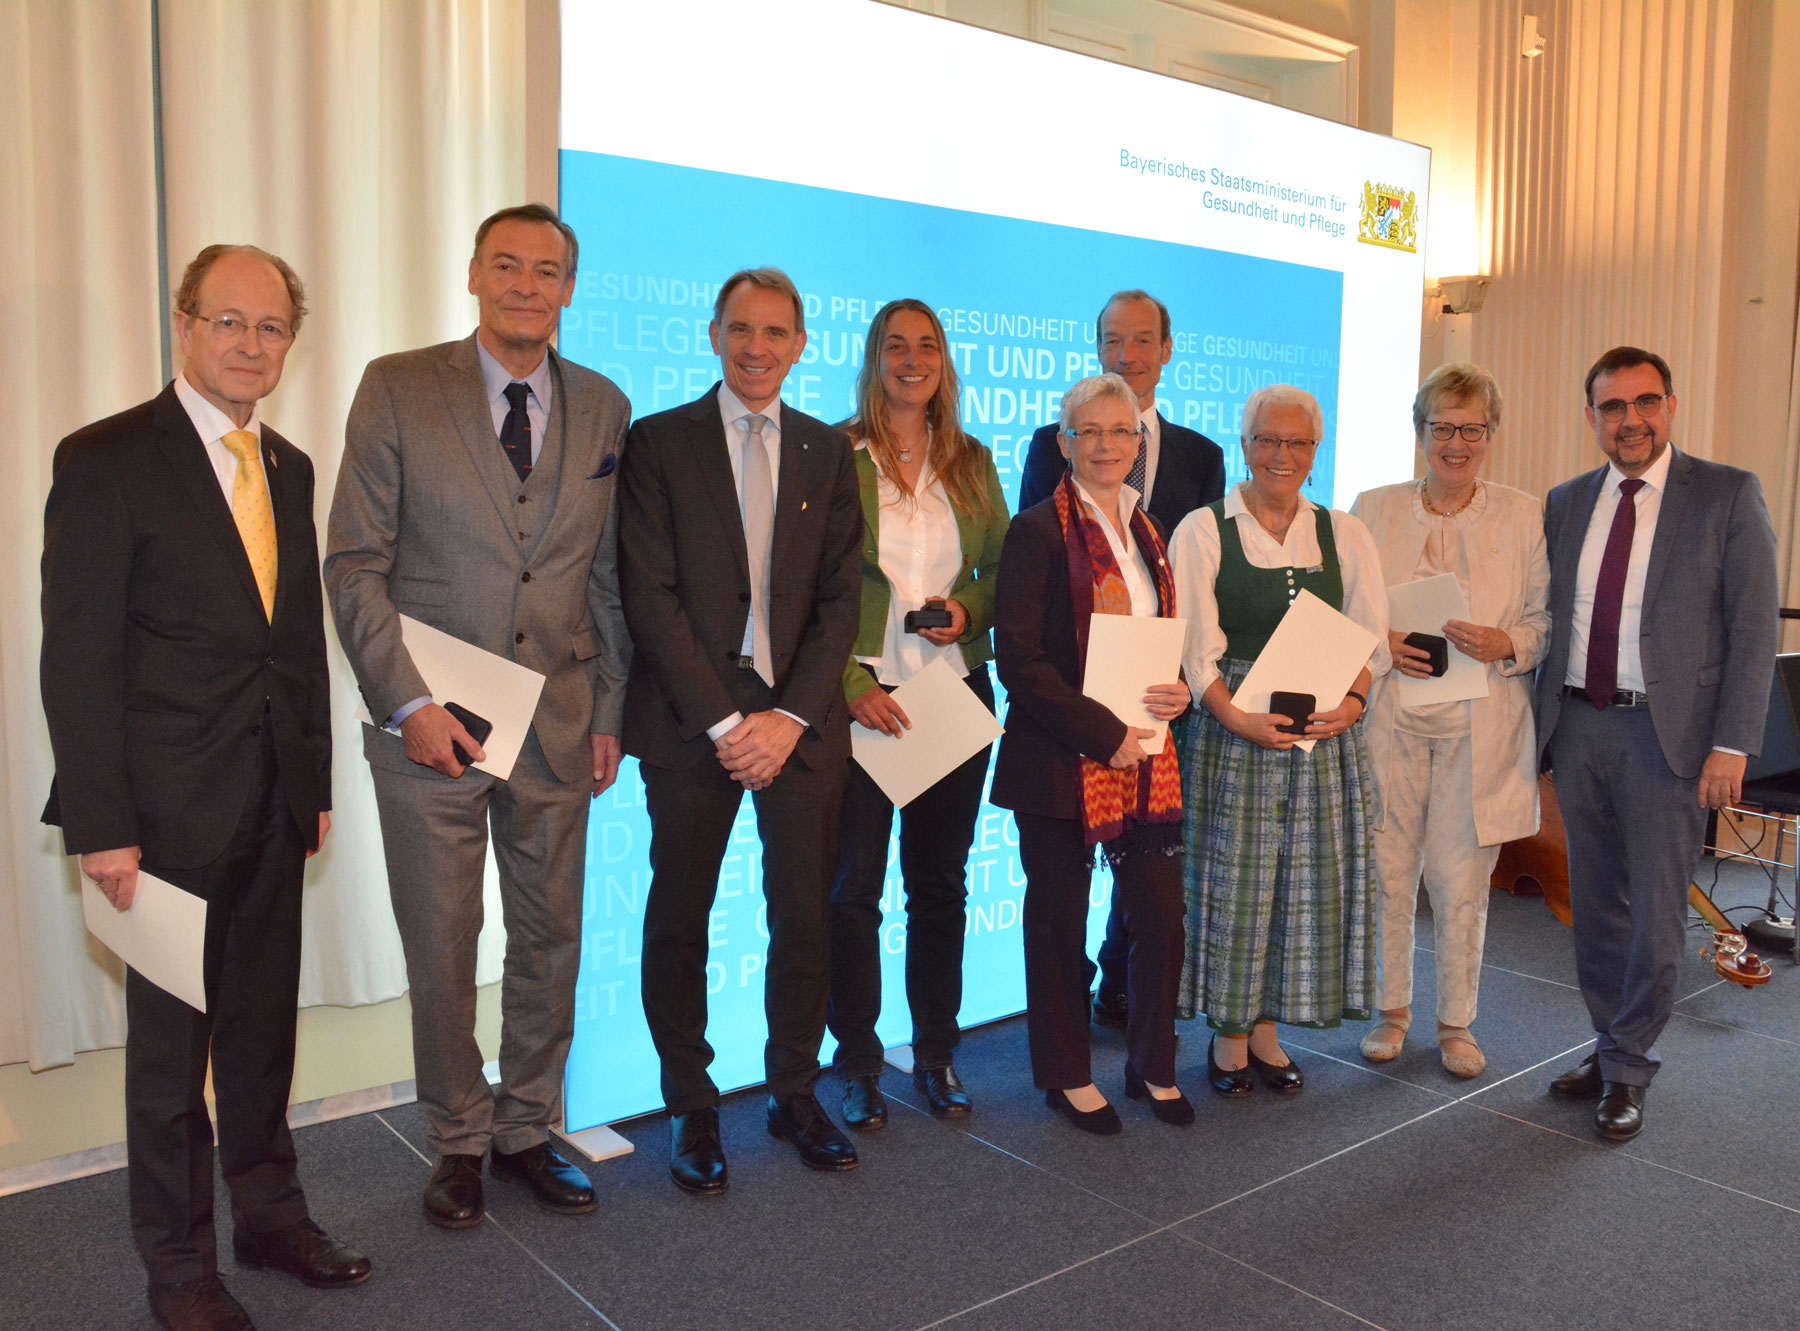 Acht Bürgerinnen und Bürger bei der Verleihung der Bayerischen Staatsmedaille für Verdienste um Gesundheit und Pflege